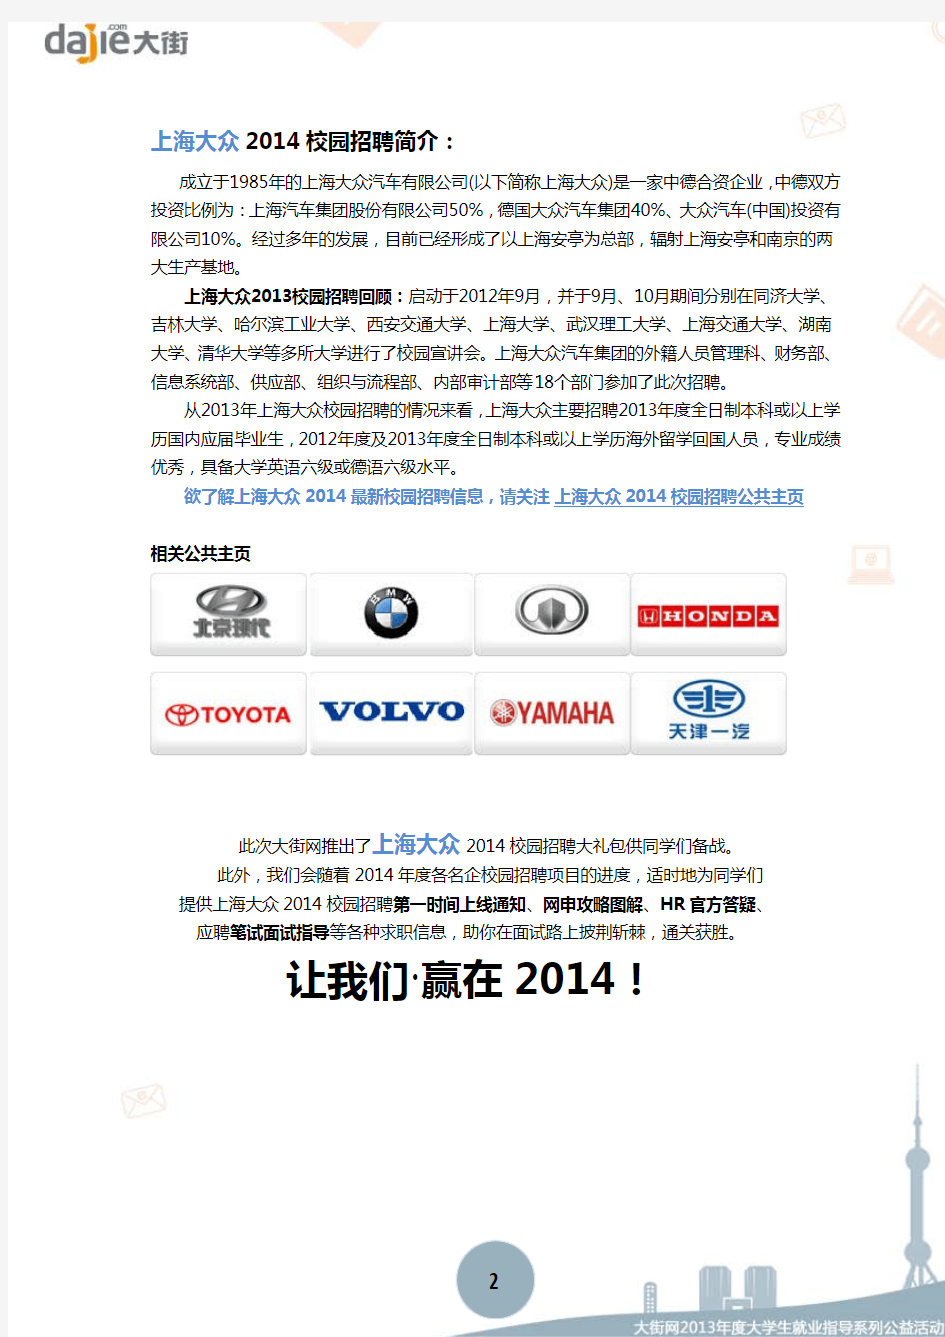 上海大众汽车有限公司2014校园招聘大礼包_上海大众汽车有限公司2014校园招聘